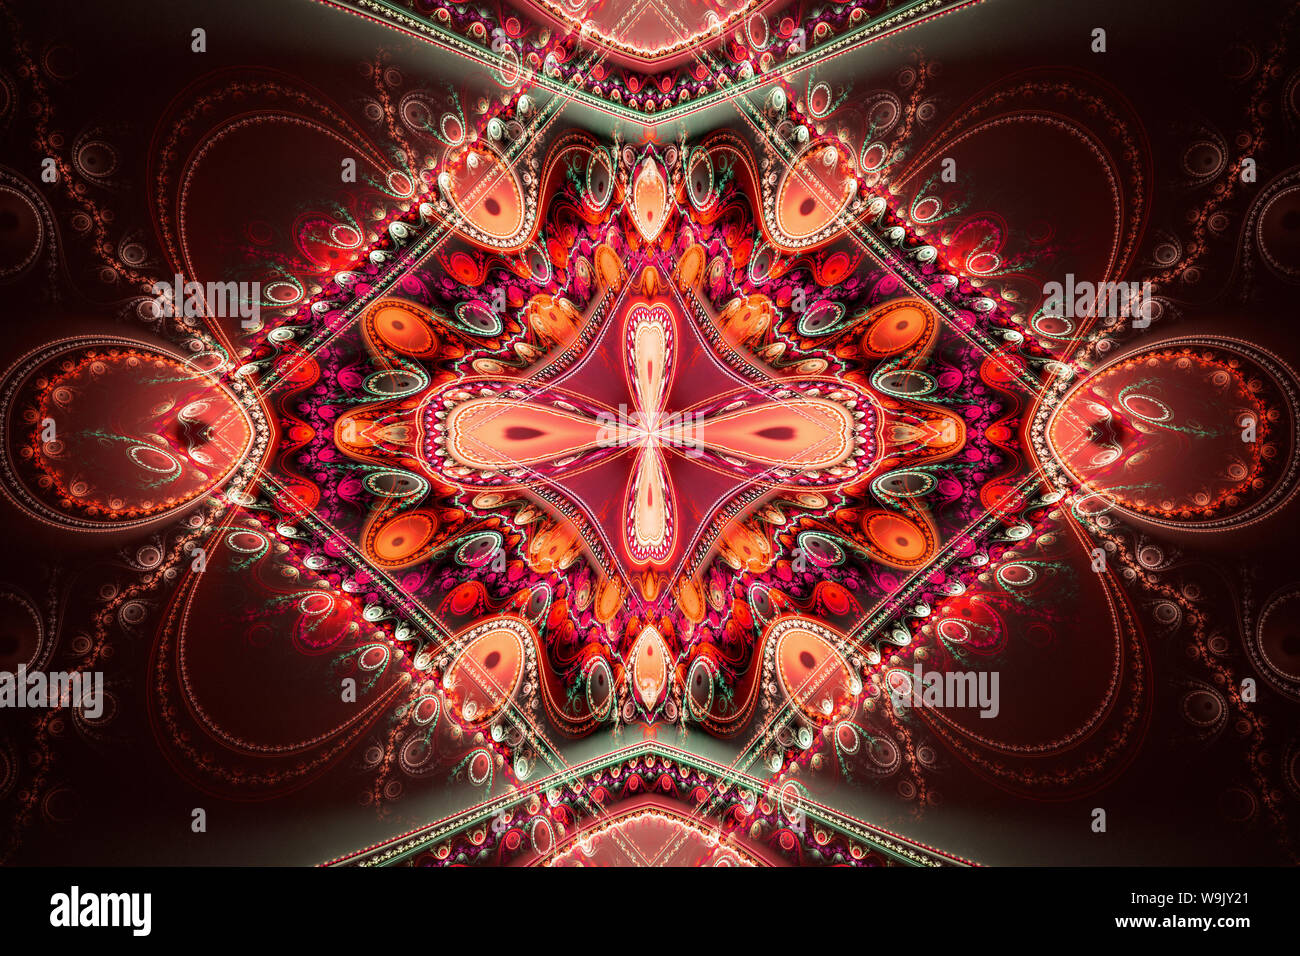 Rosso Arancione frattale geometrico illustrano fantasticando immaginazione spazio psichedelico sogni magic esplosione nucleare pattern di frequenza i concetti di radiazione Foto Stock